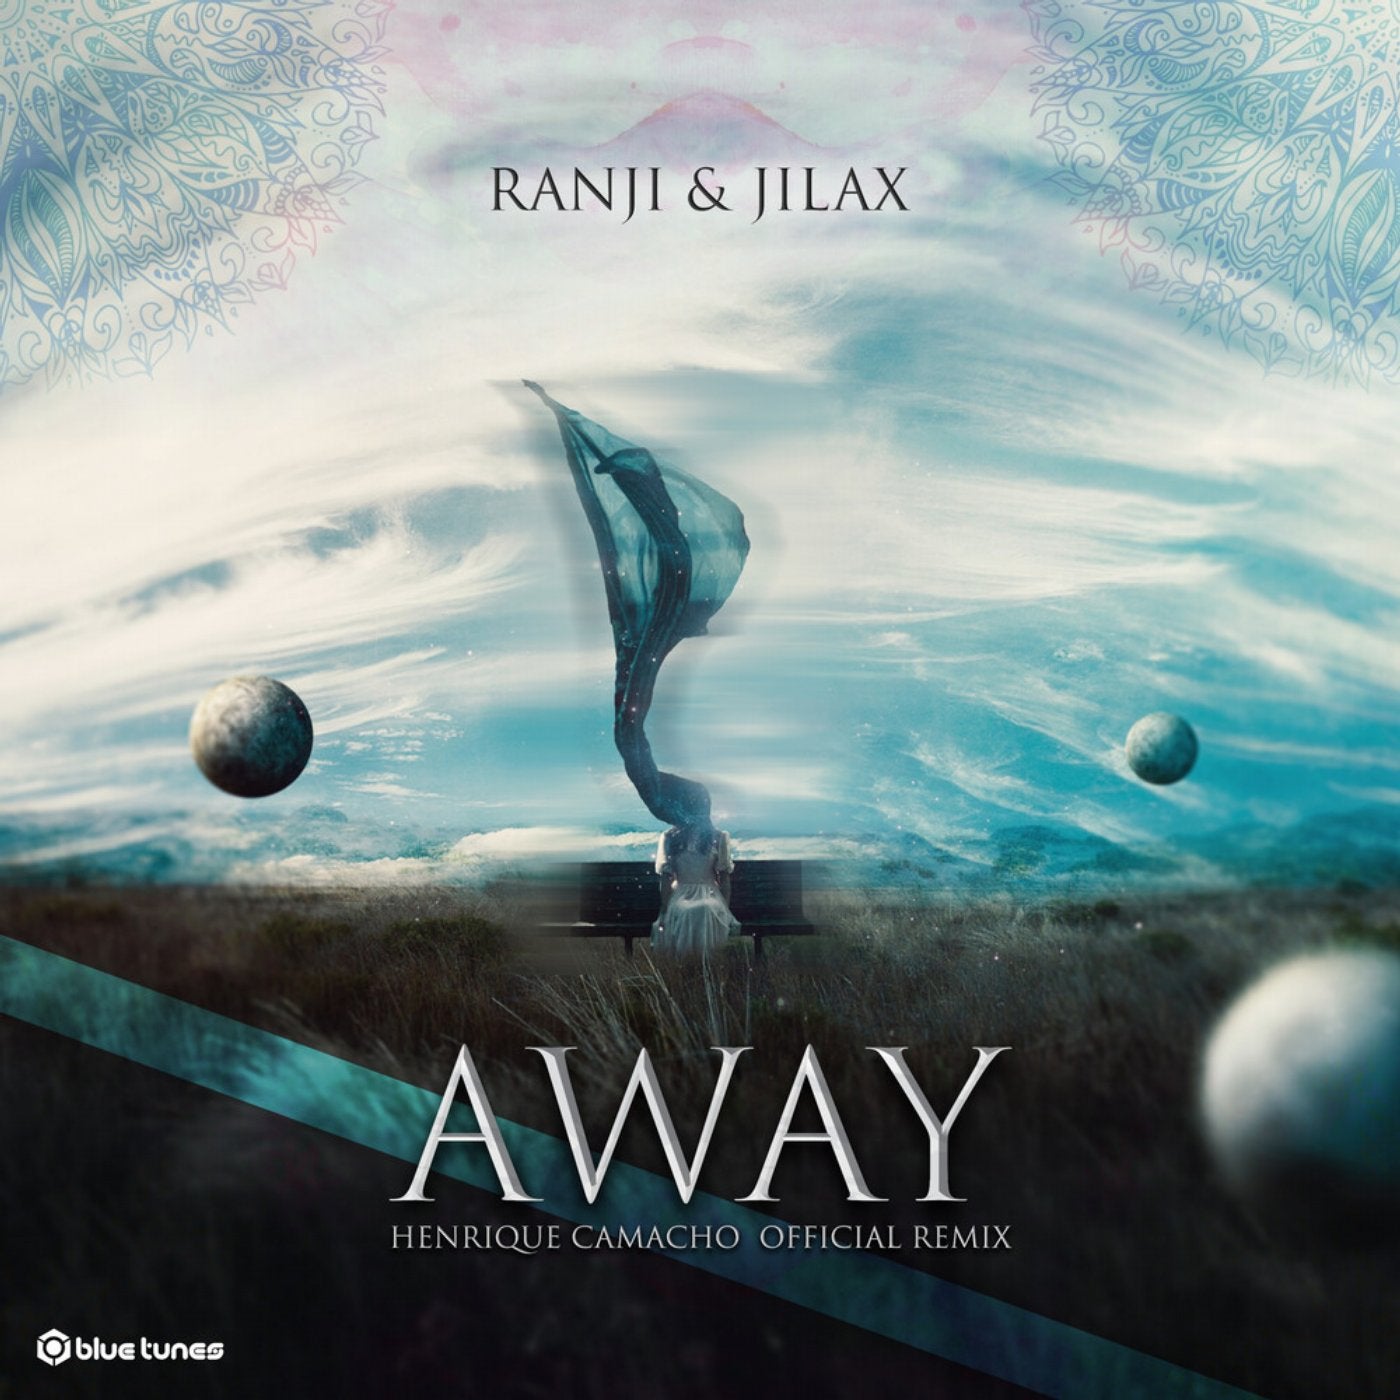 Away (Henrique Camacho Official Remix)